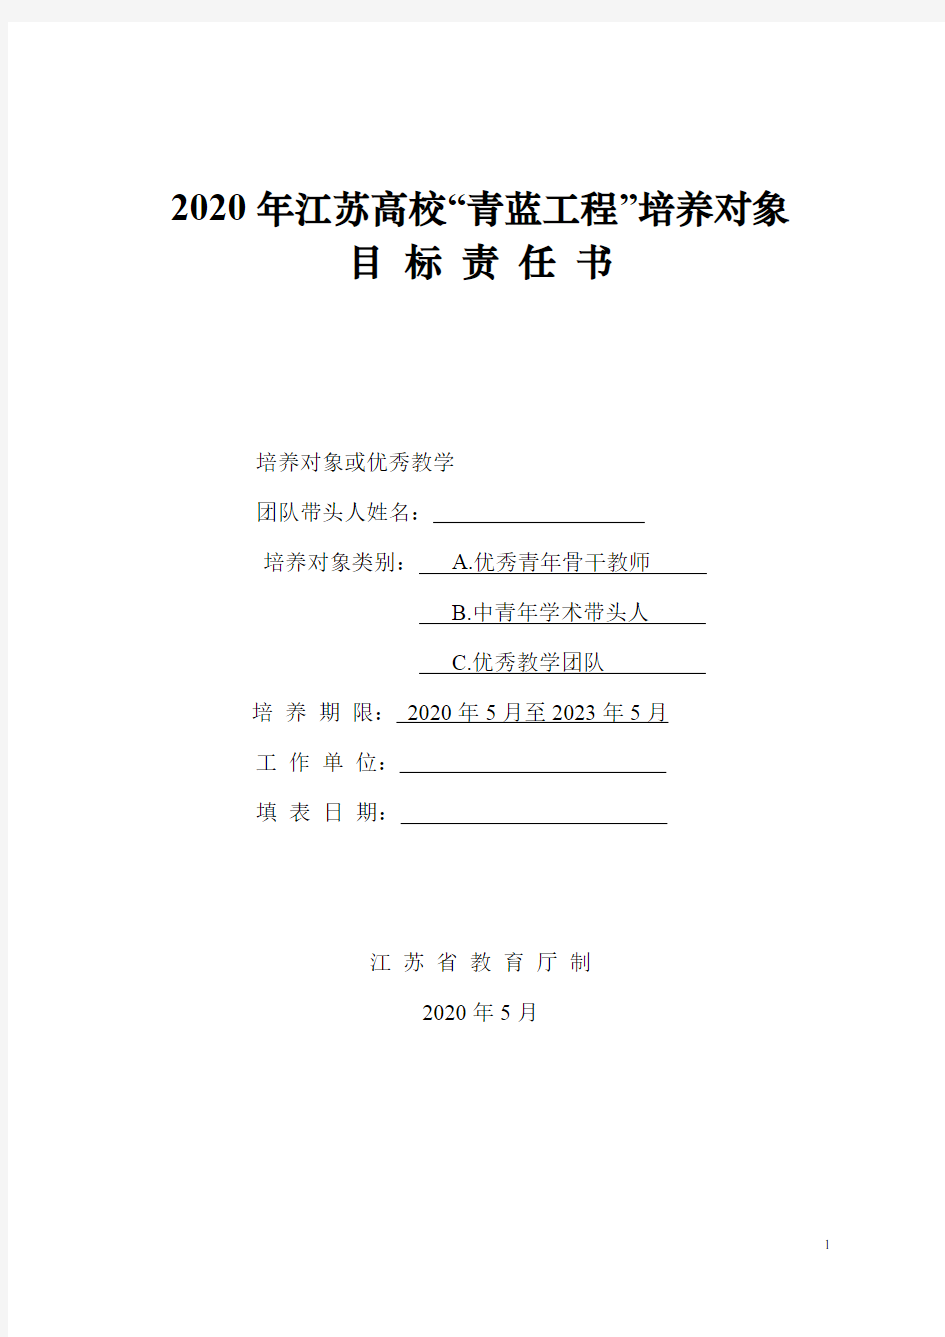 2020年江苏高校“青蓝工程”培养对象目标责任书